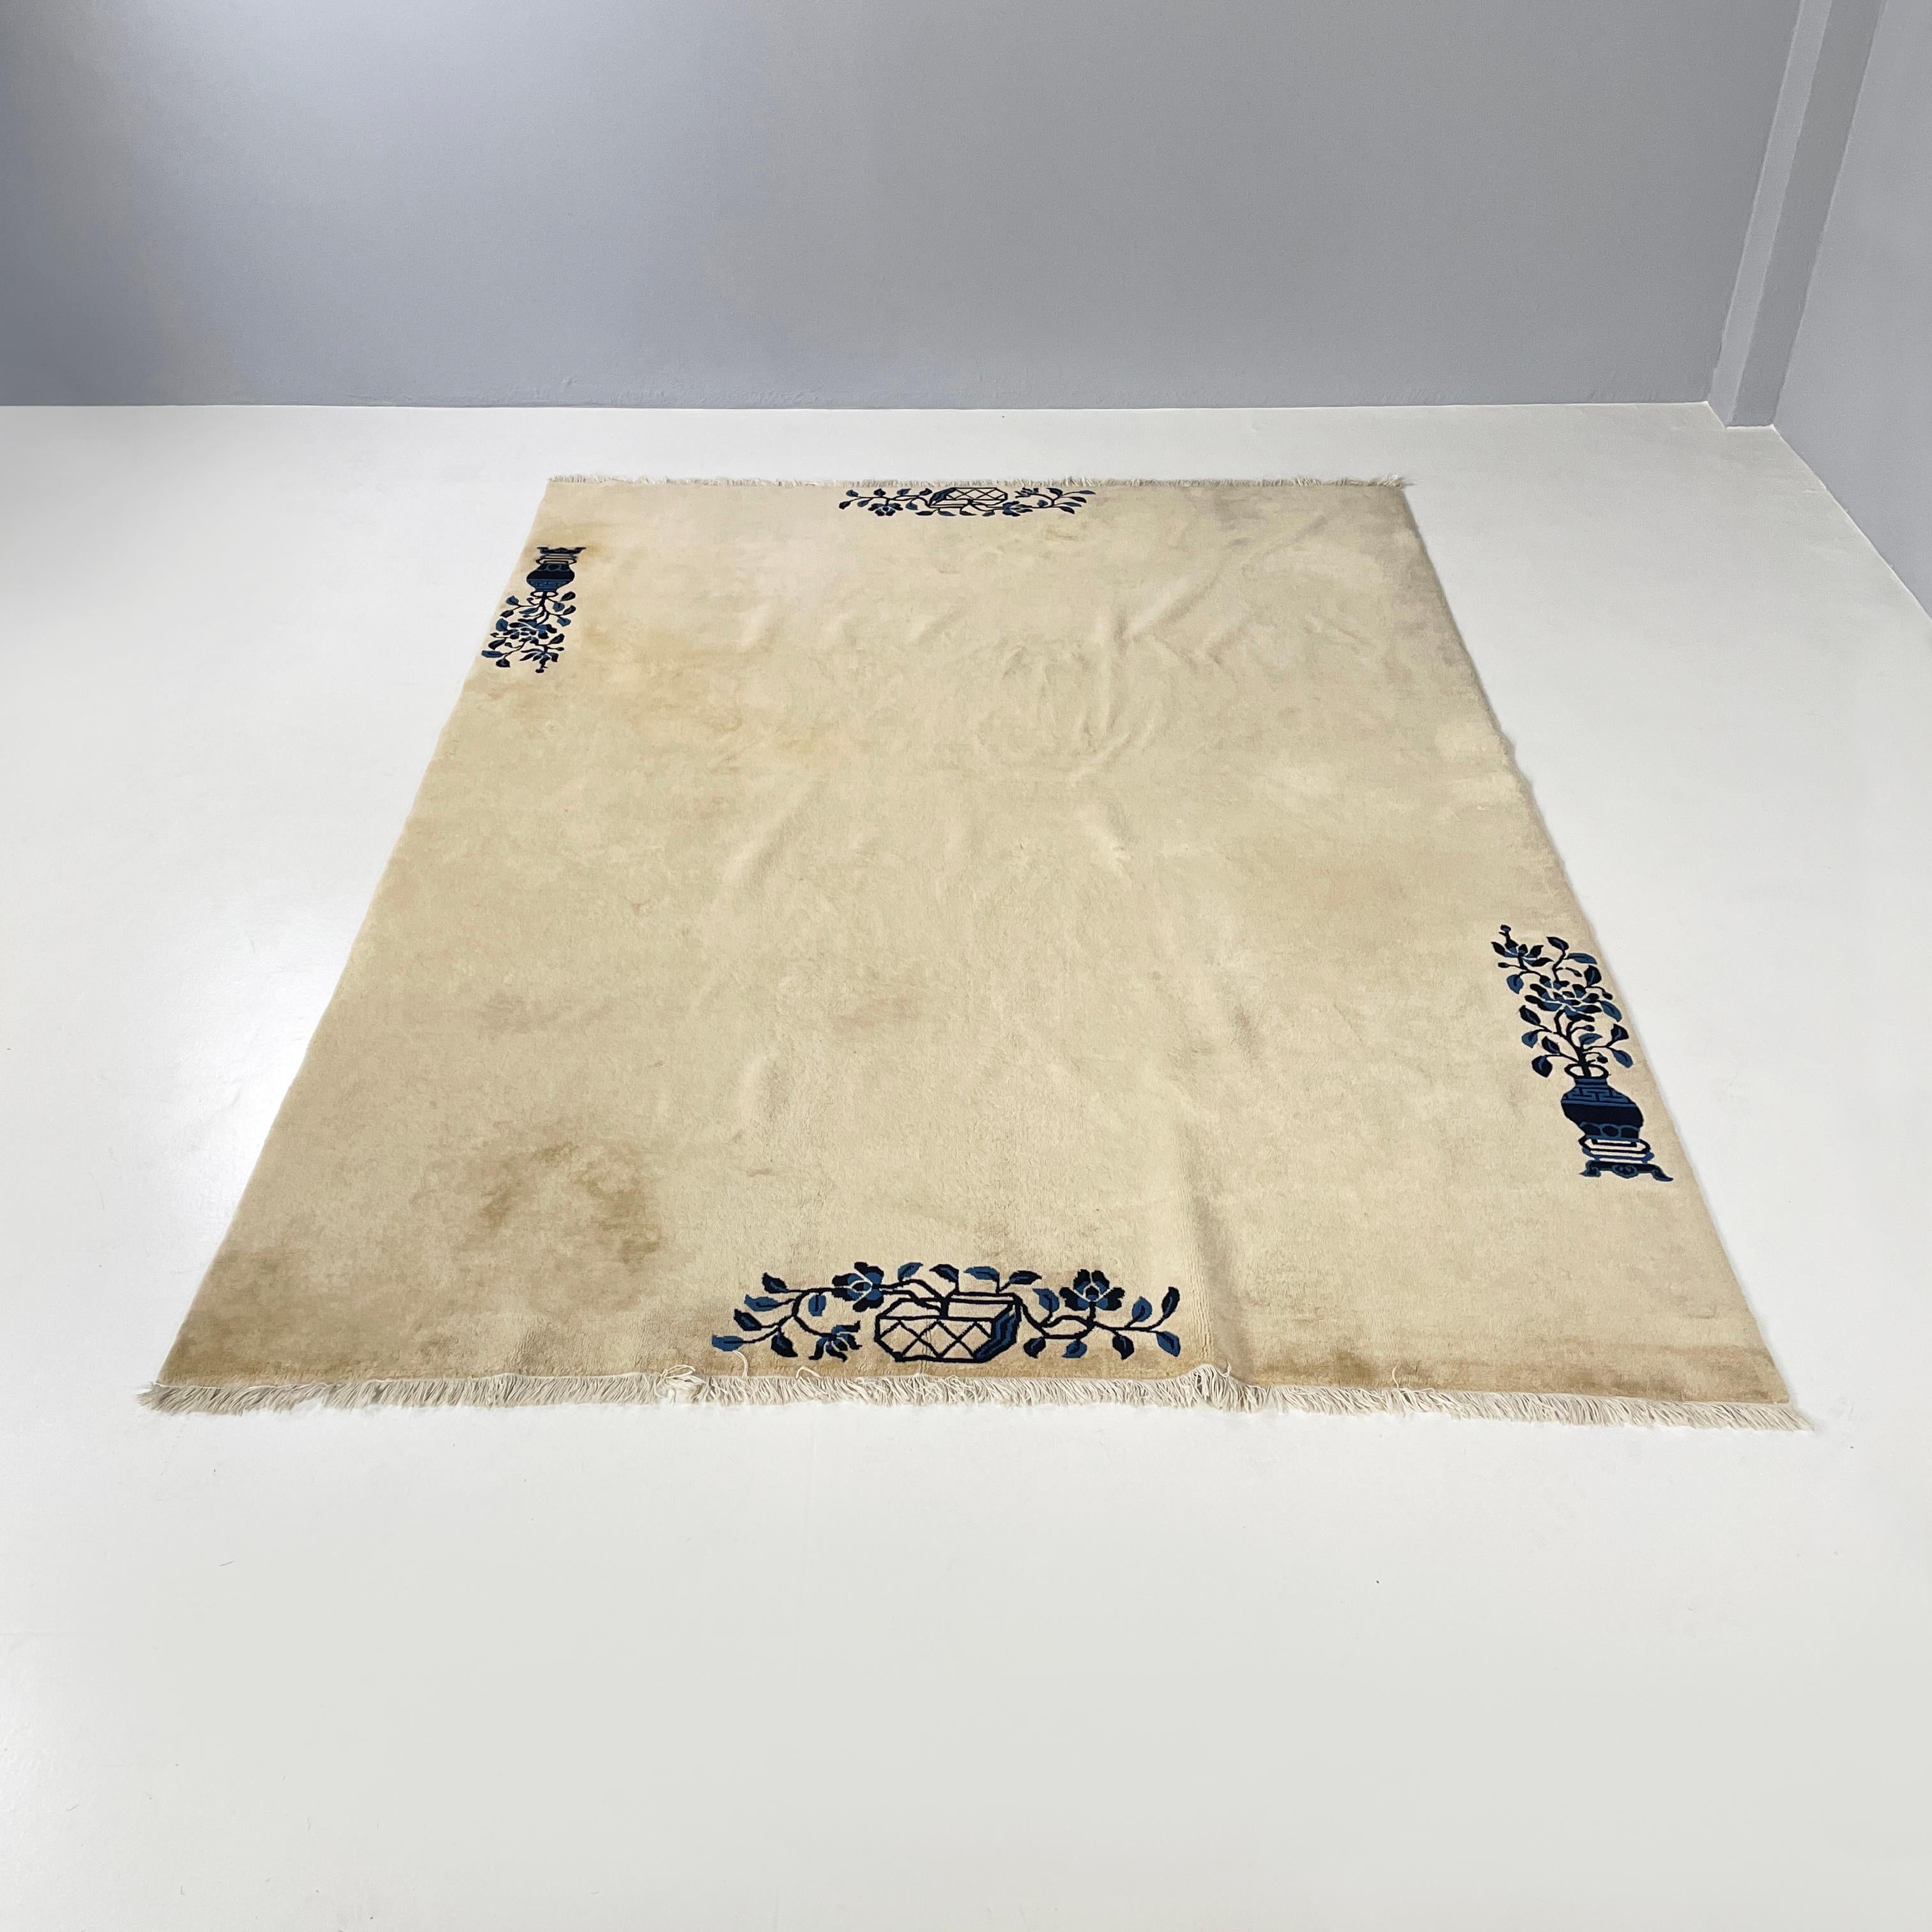 Chinesischer beiger Teppich mit schwarzem und blauem Blumendekor, Anfang 1900
Rechteckiger Teppich in Beigetönen mit schwarzen und blauen Verzierungen. Die Verzierungen auf dem Profil stellen zwei Blumenvasen dar: eine schmale und hohe und eine